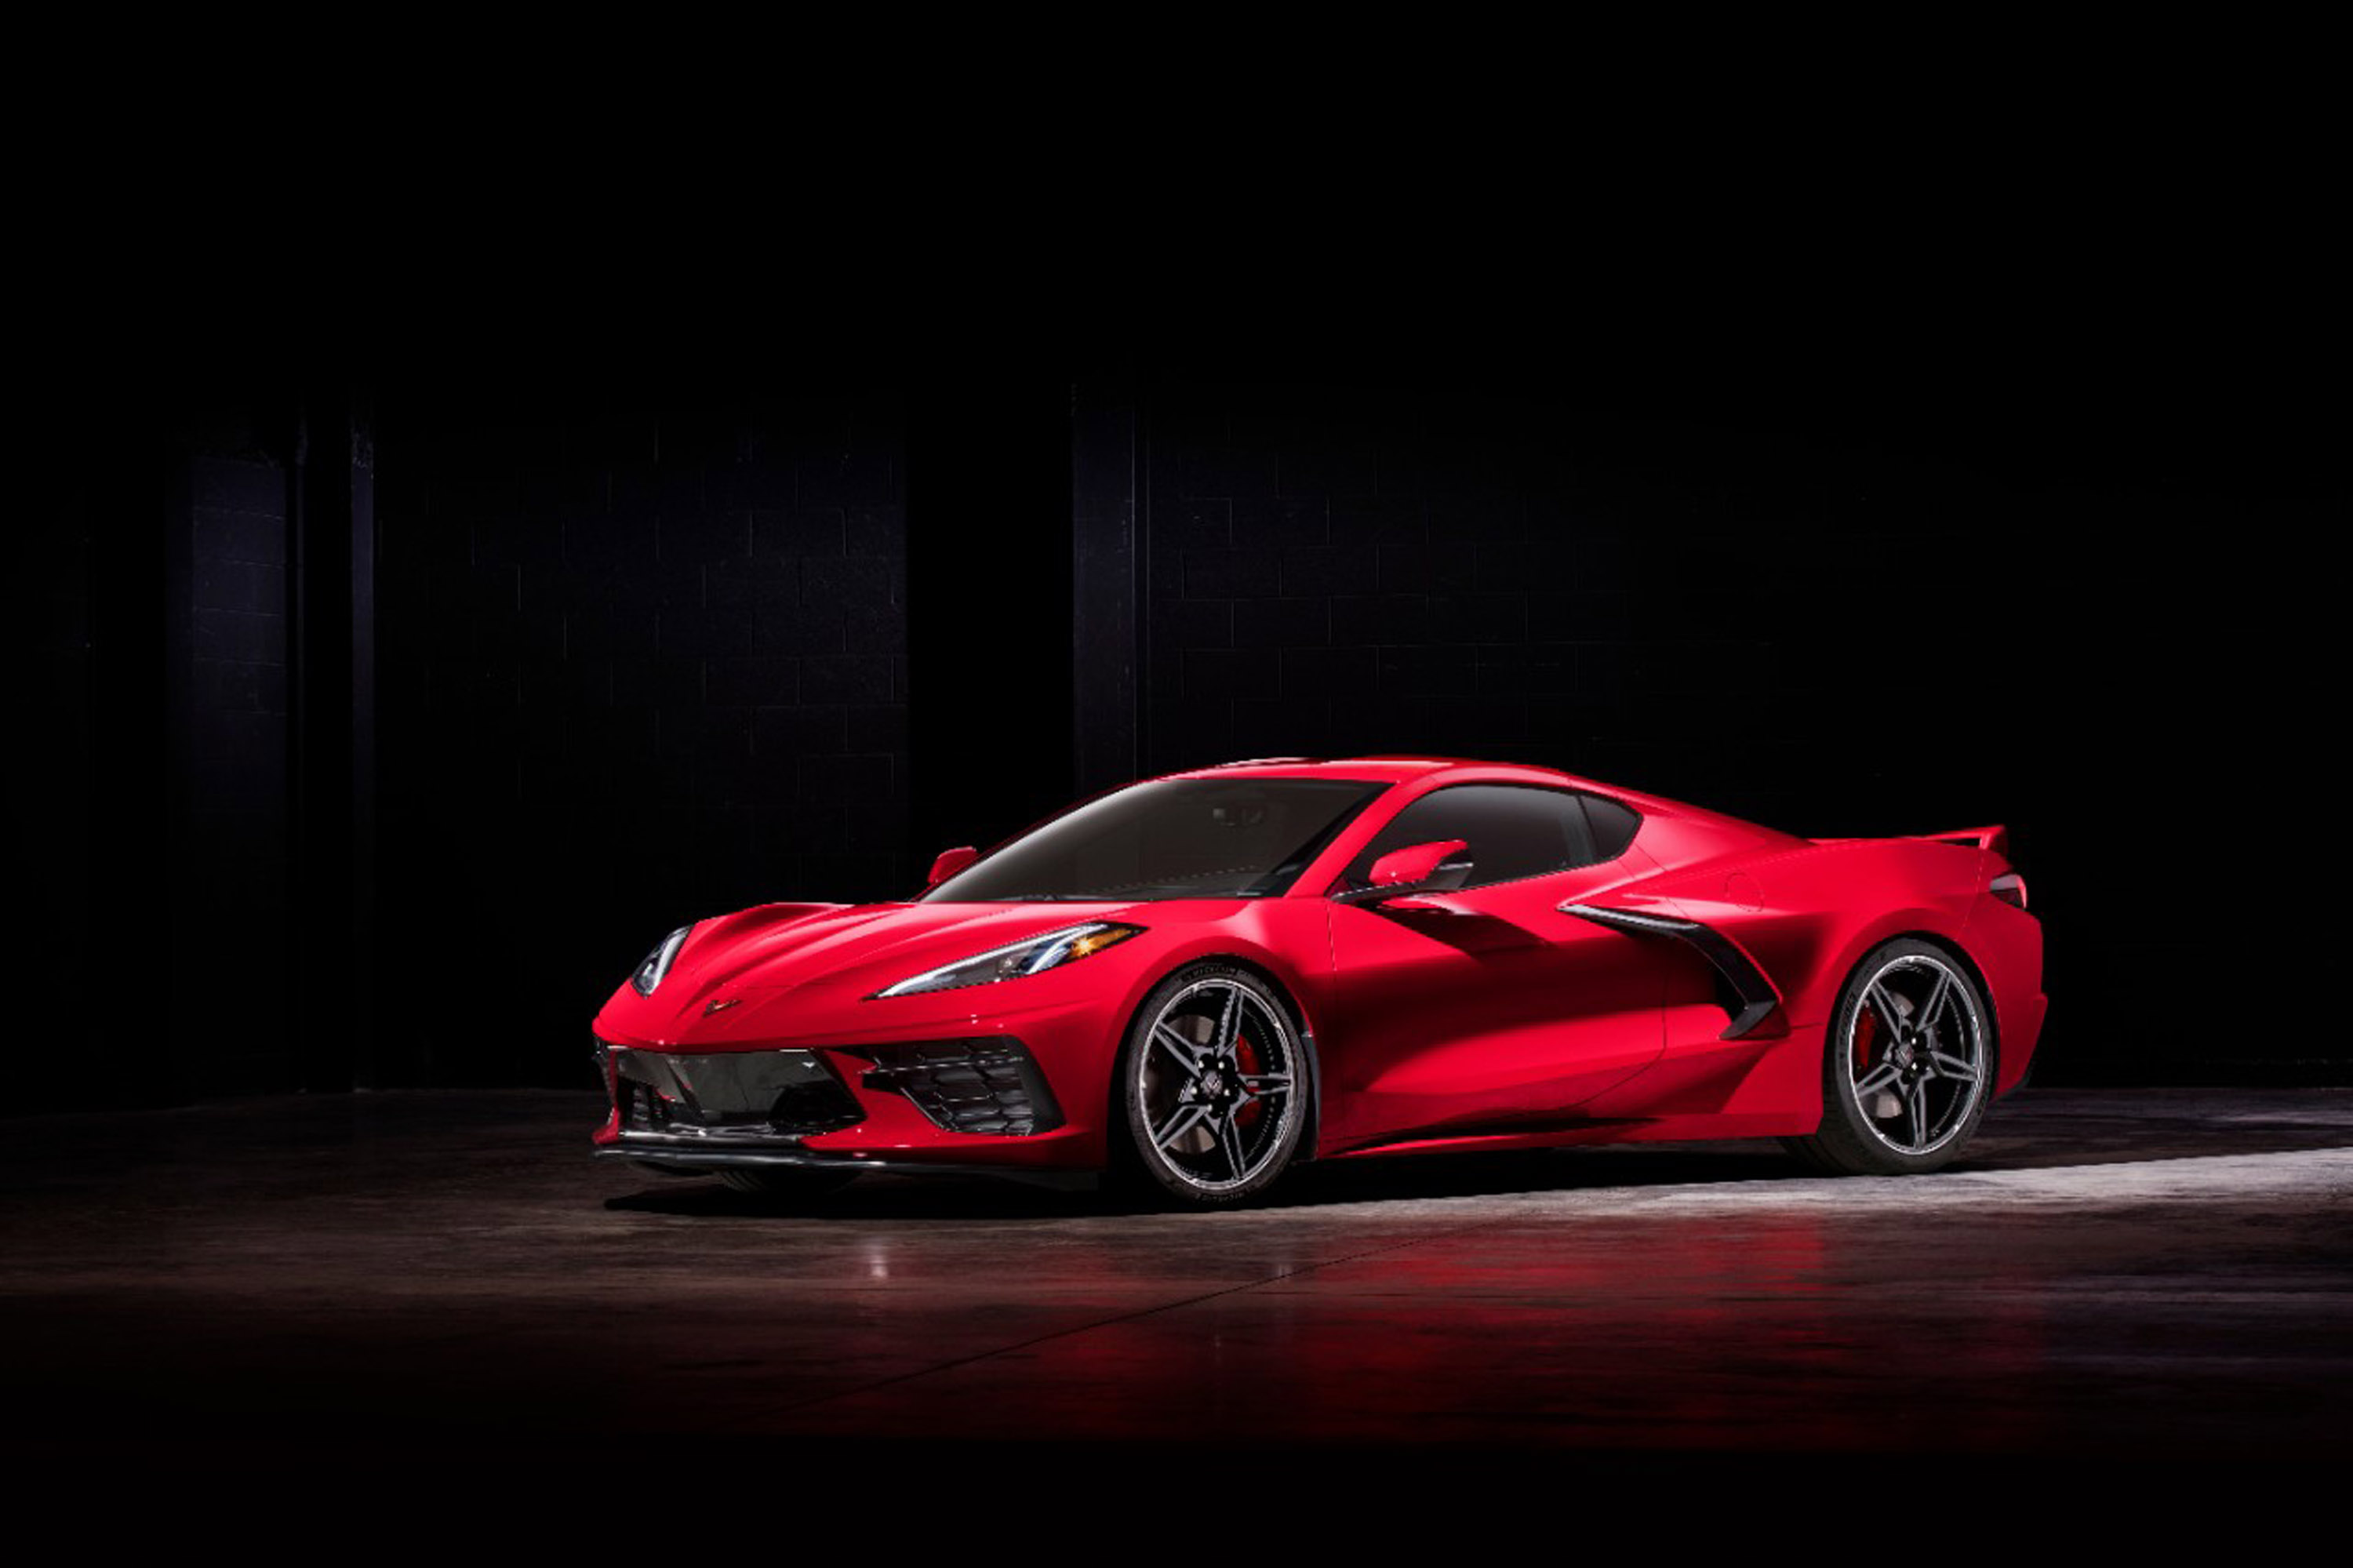 Это двухдневное празднование будет включать в себя несколько событий, в том числе здесь будет представлен новый Corvette Stingray 2020 года, будет организован VIP-прием, эксклюзивное ралли Corvette и пройдет автосалон Corvette.